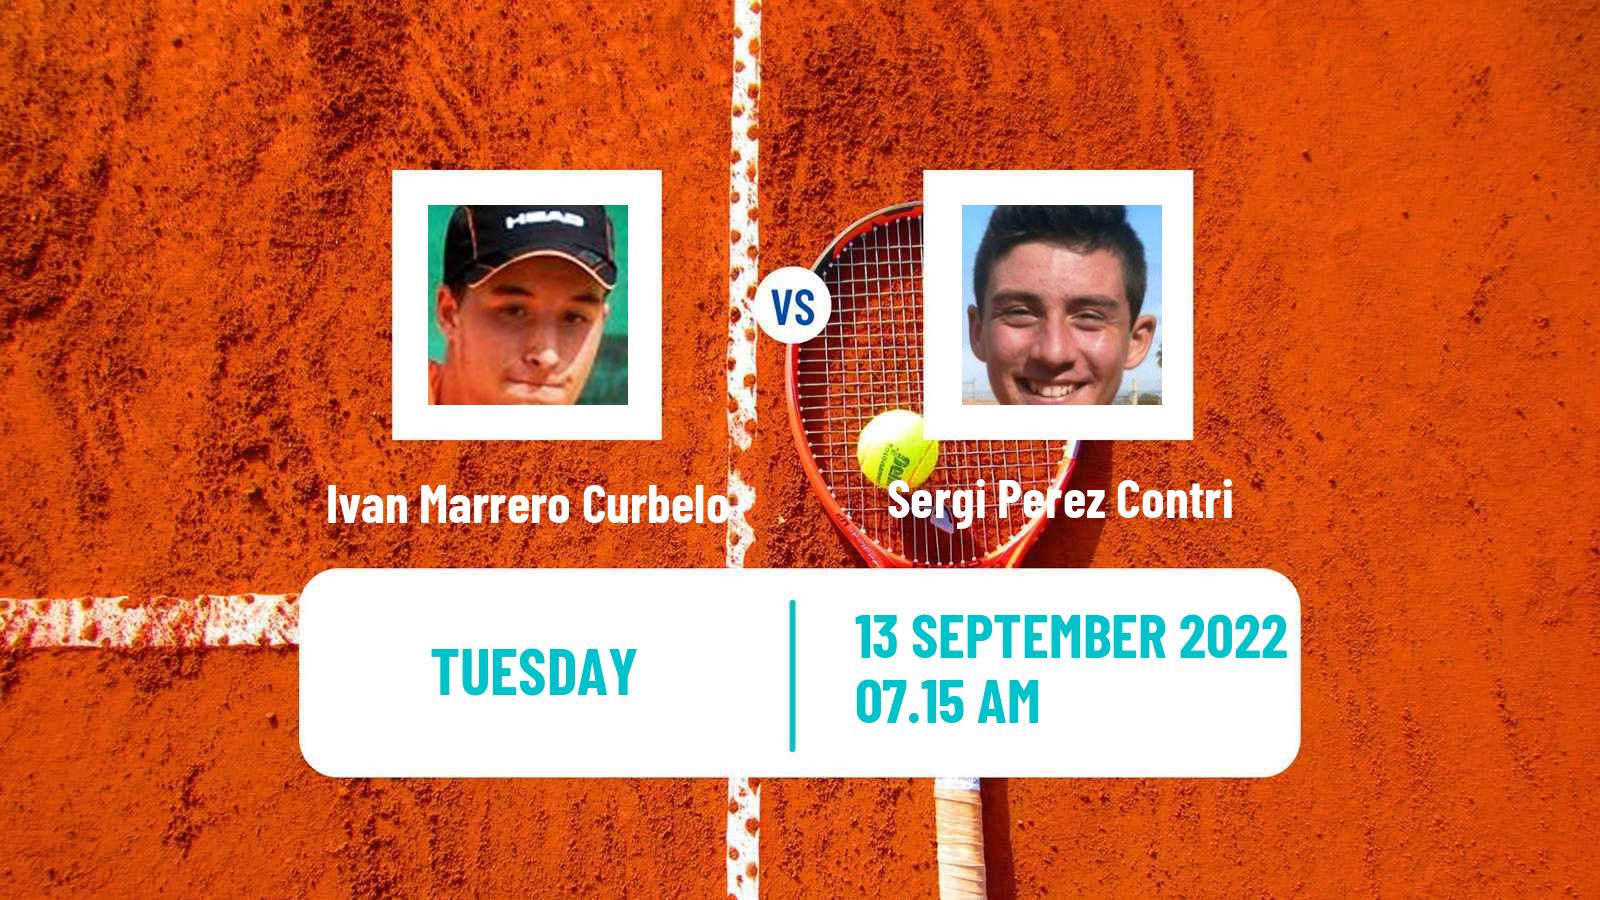 Tennis ITF Tournaments Ivan Marrero Curbelo - Sergi Perez Contri